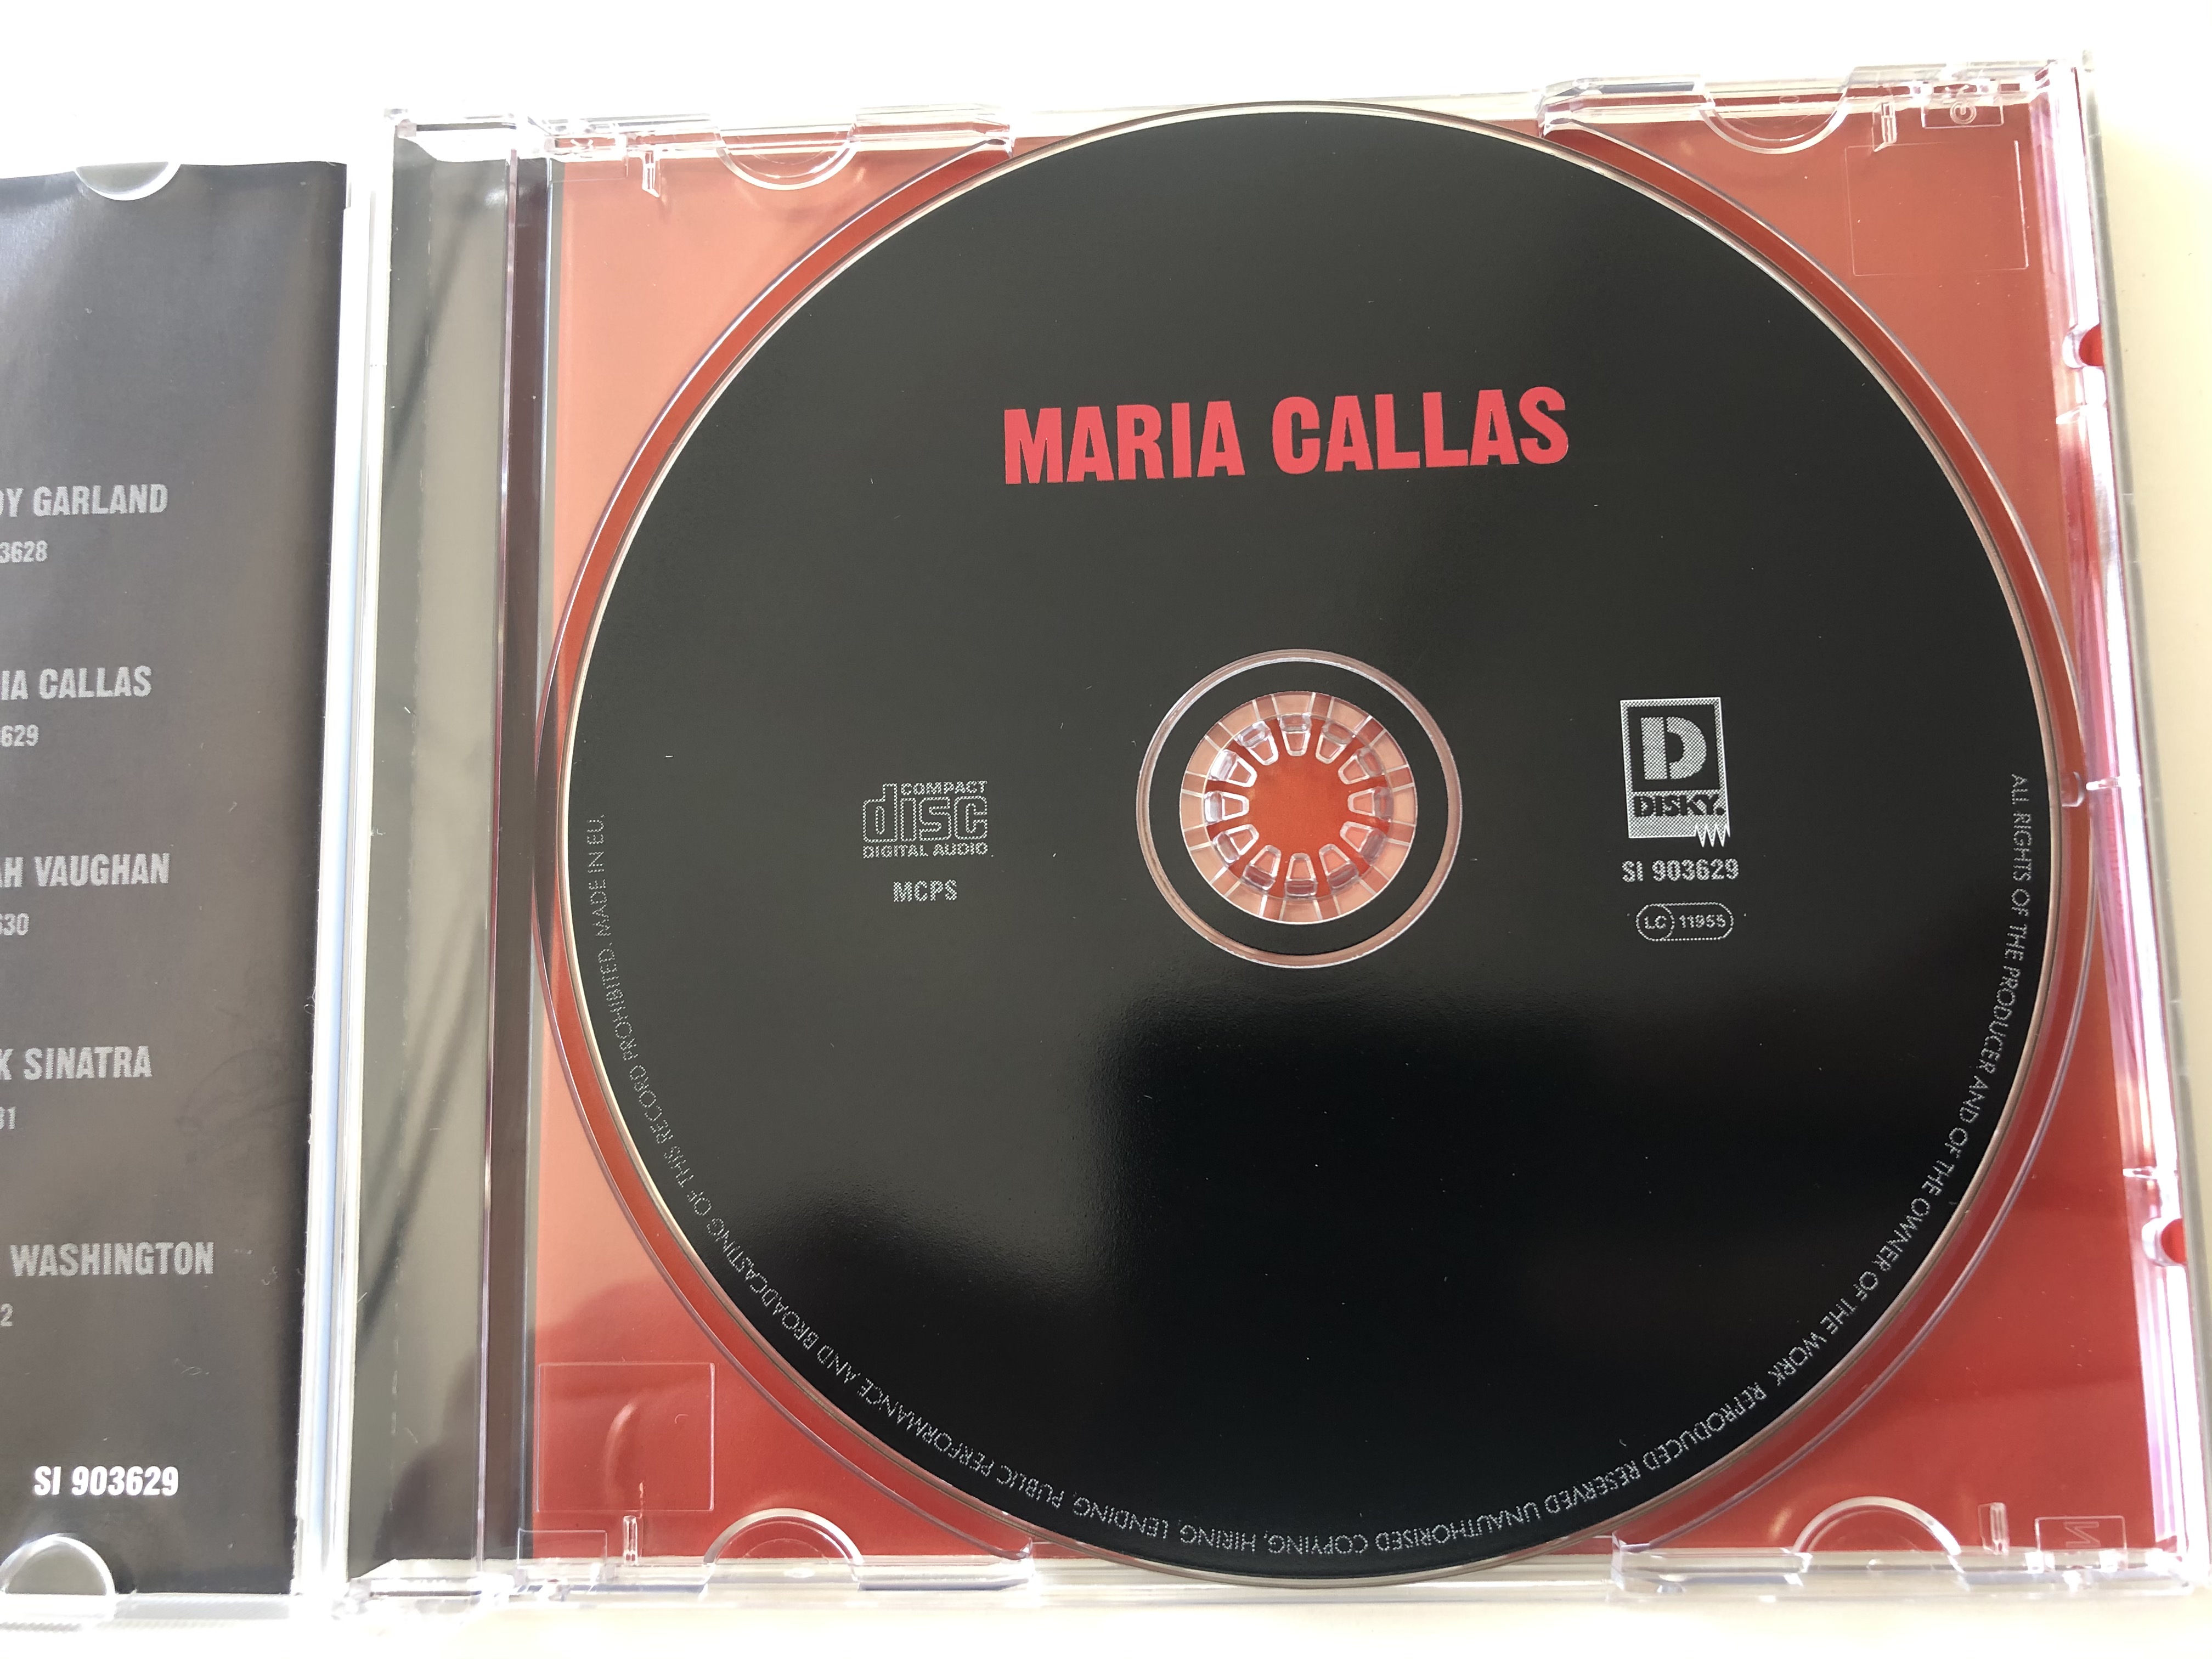 maria-callas-sings-her-great-aria-s-original-artist-original-recordings-disky-audio-cd-2006-si-903629-4-.jpg